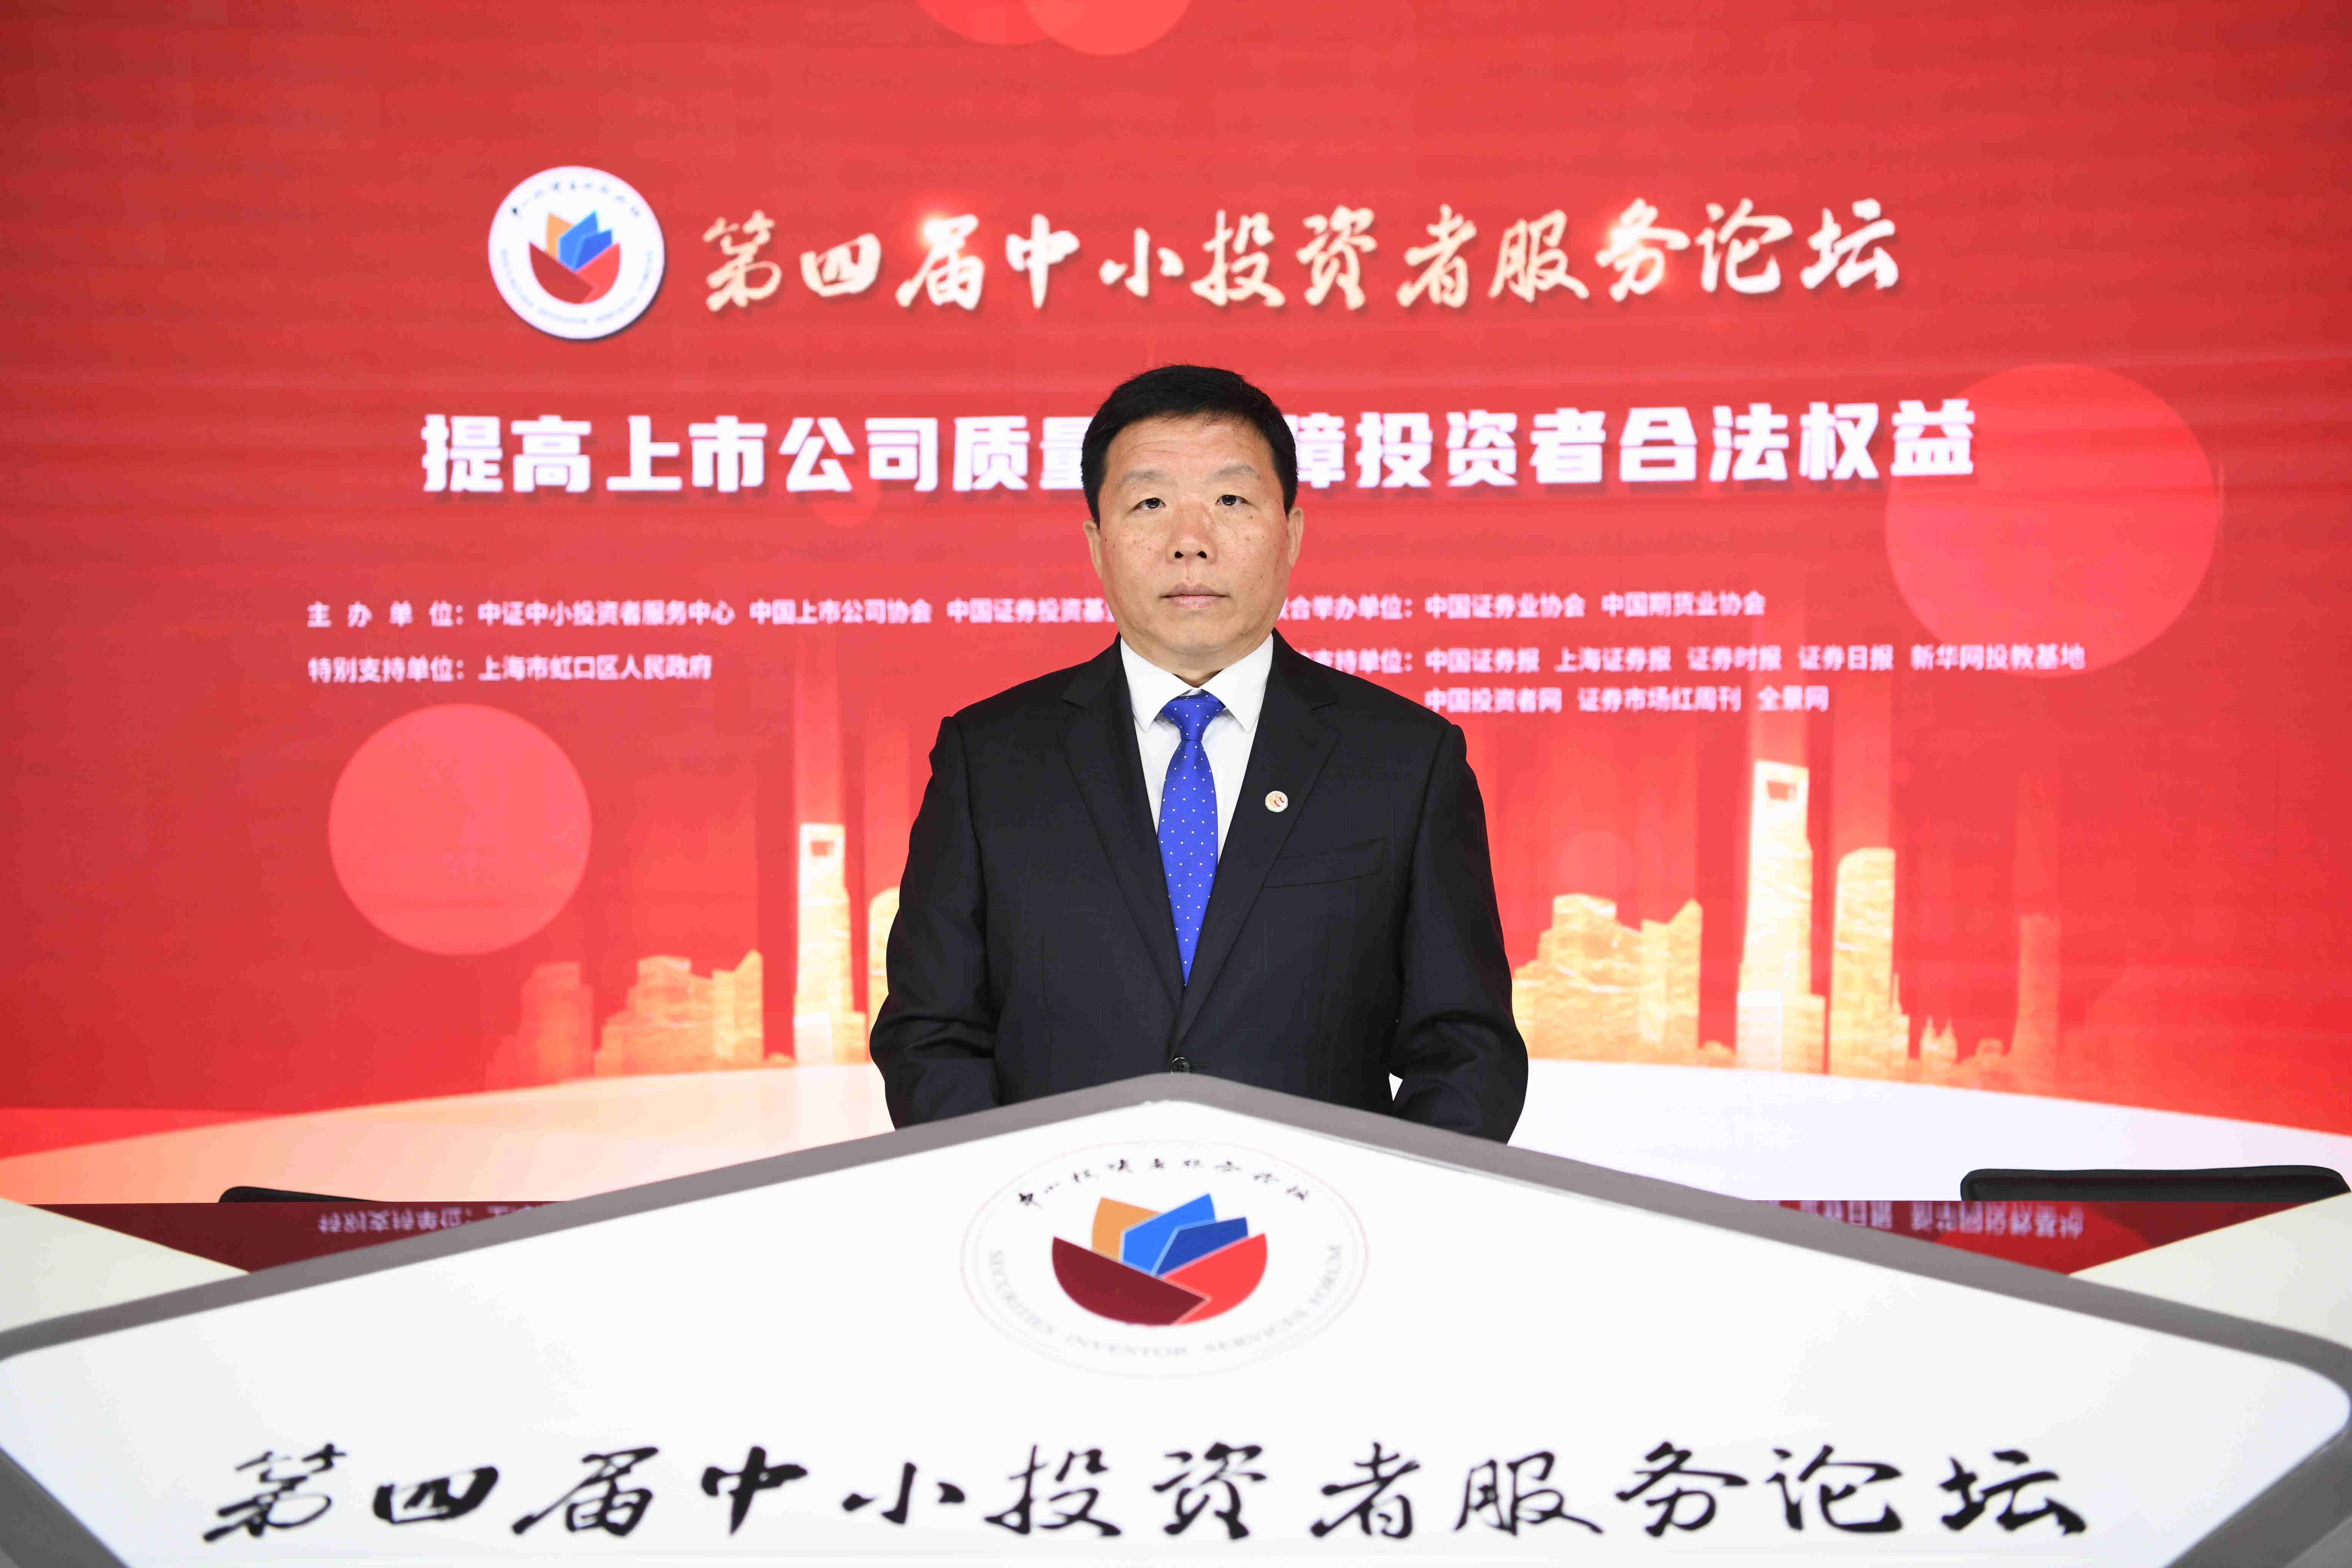 中国上市公司协会执行副会长柳磊在第四届中小投资者服务论坛上的致辞